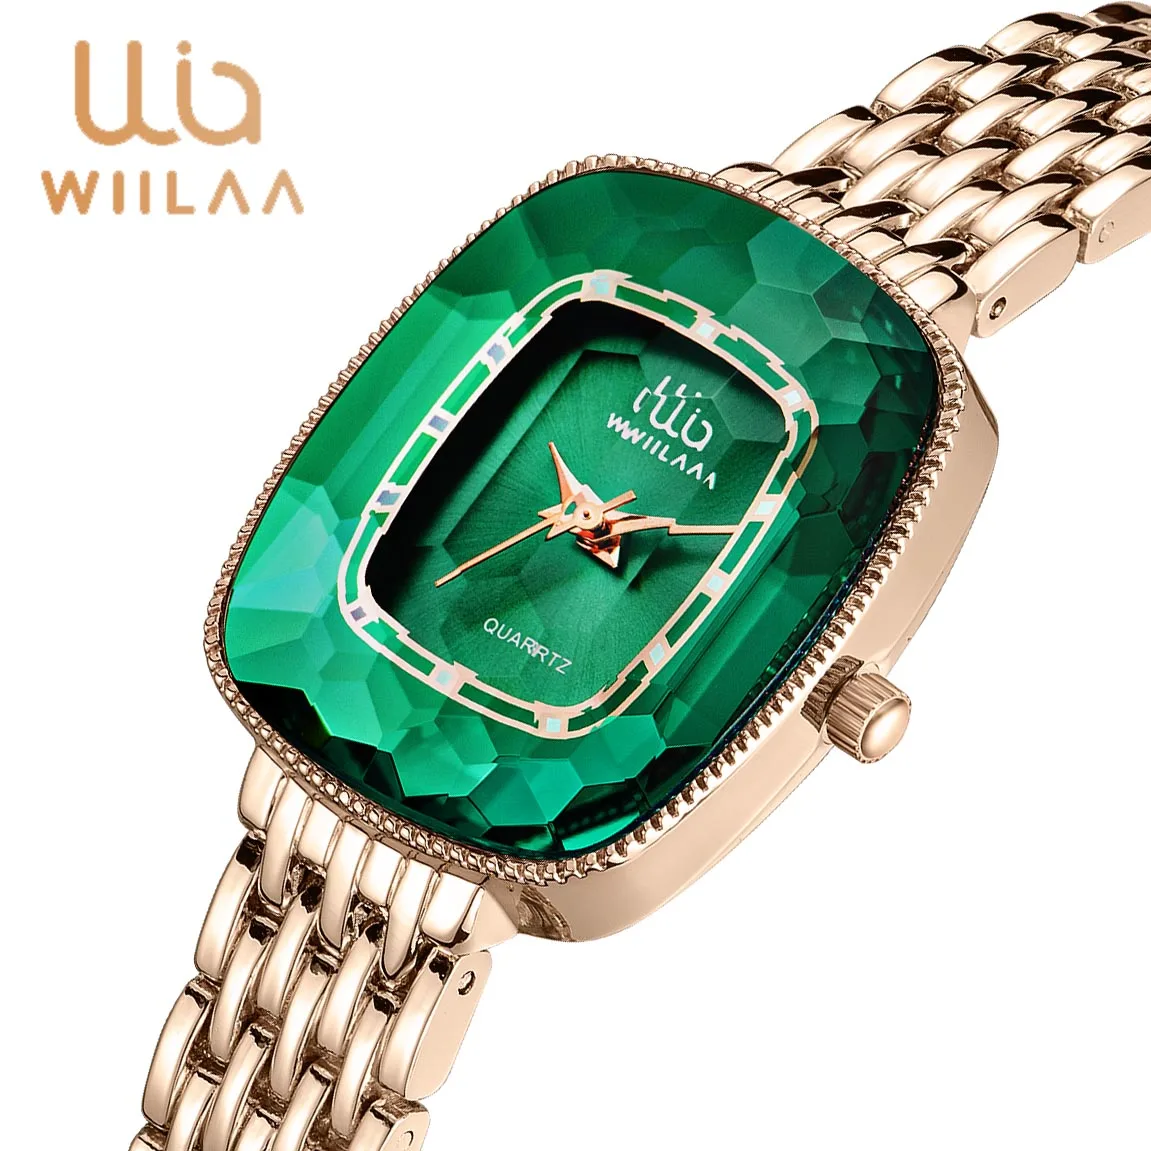 นาฬิกาควอทซ์ผู้หญิงมีแบรนด์สุดหรู Wiilaa นาฬิกาข้อมือสตรีสำหรับ montre Femme 2023นาฬิกาผู้หญิง relogio feminino